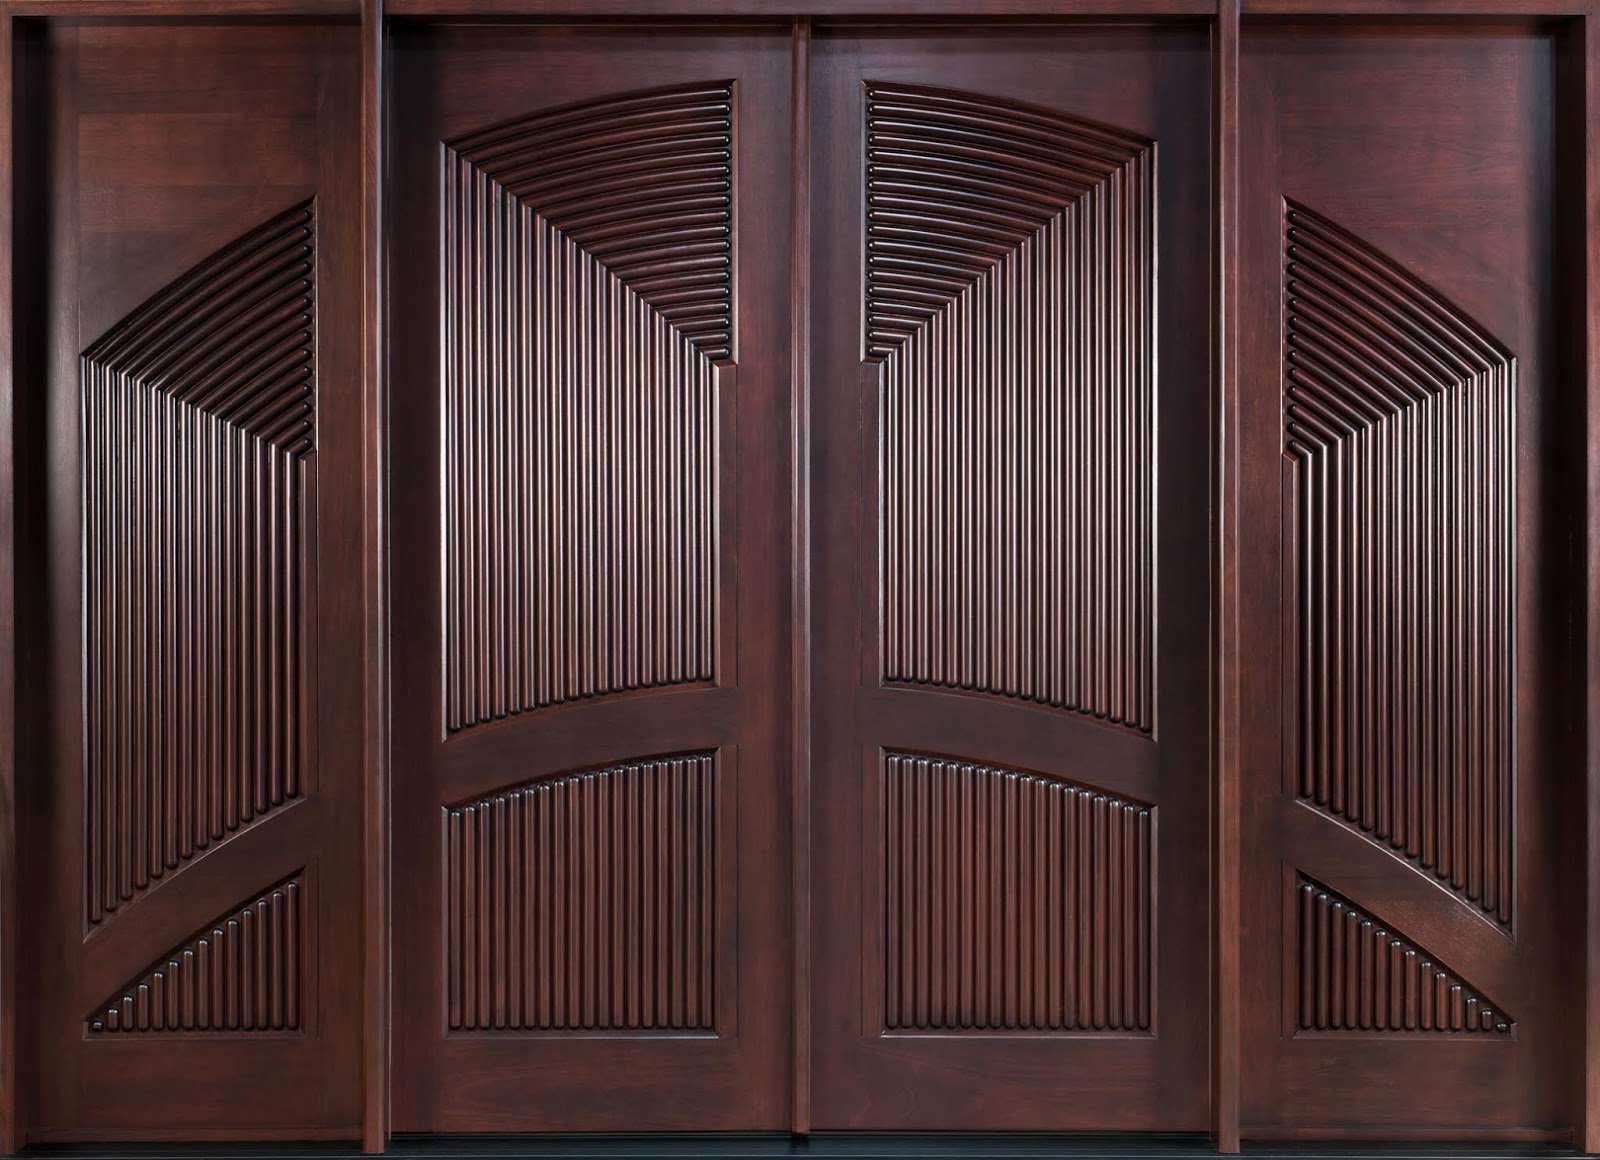 50+ Wooden Door Designs for Home 2020